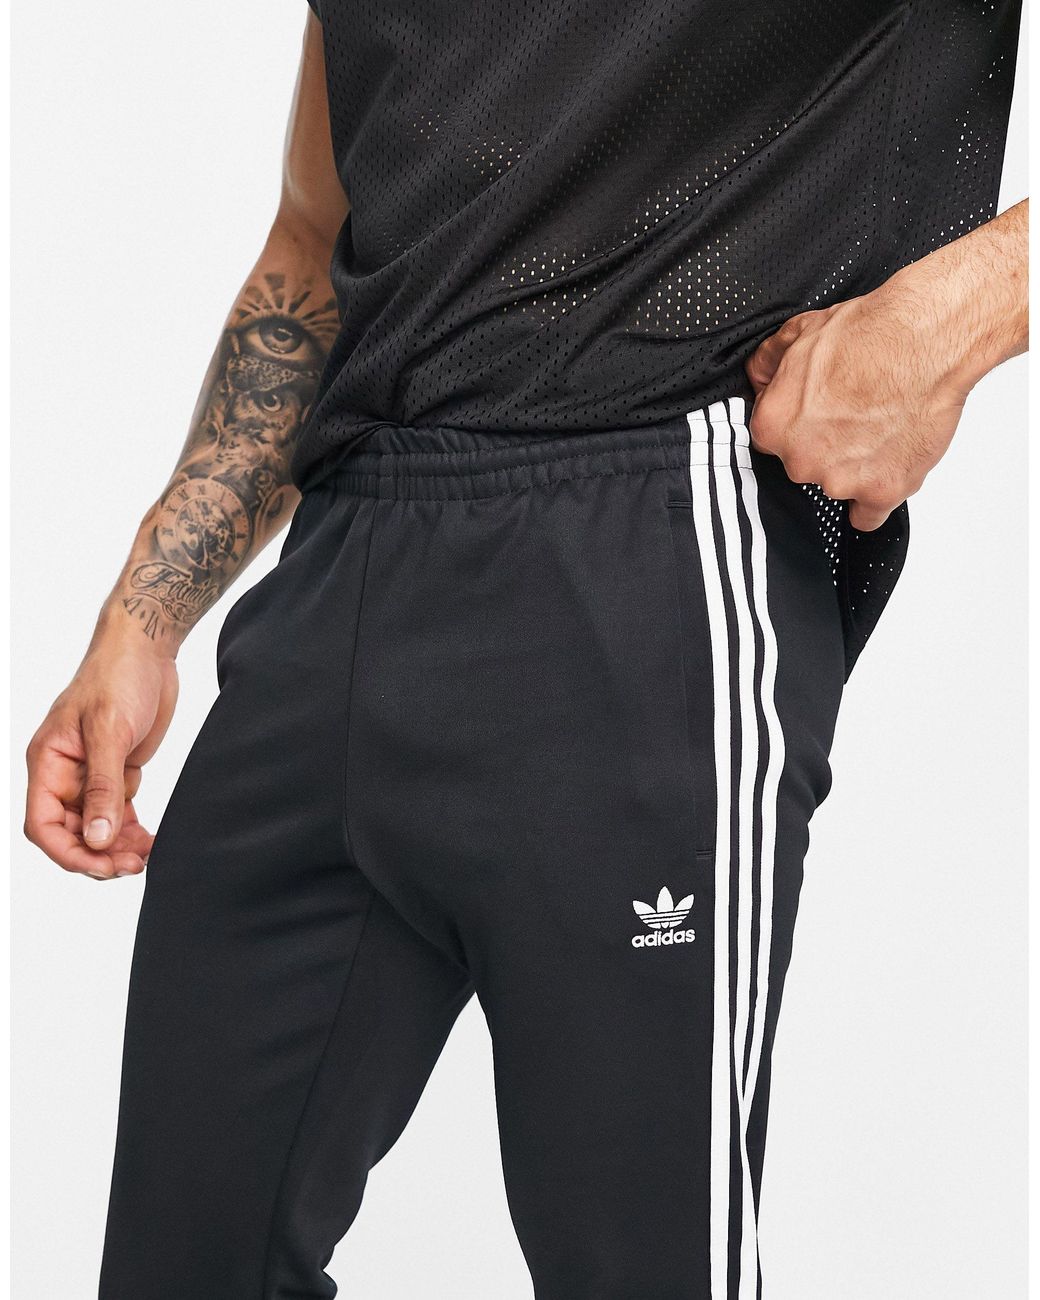 adidas Originals – adicolor primeblue – eng geschnittene jogginghose mit  den drei streifen in Schwarz für Herren - Sparen Sie 14% | Lyst DE